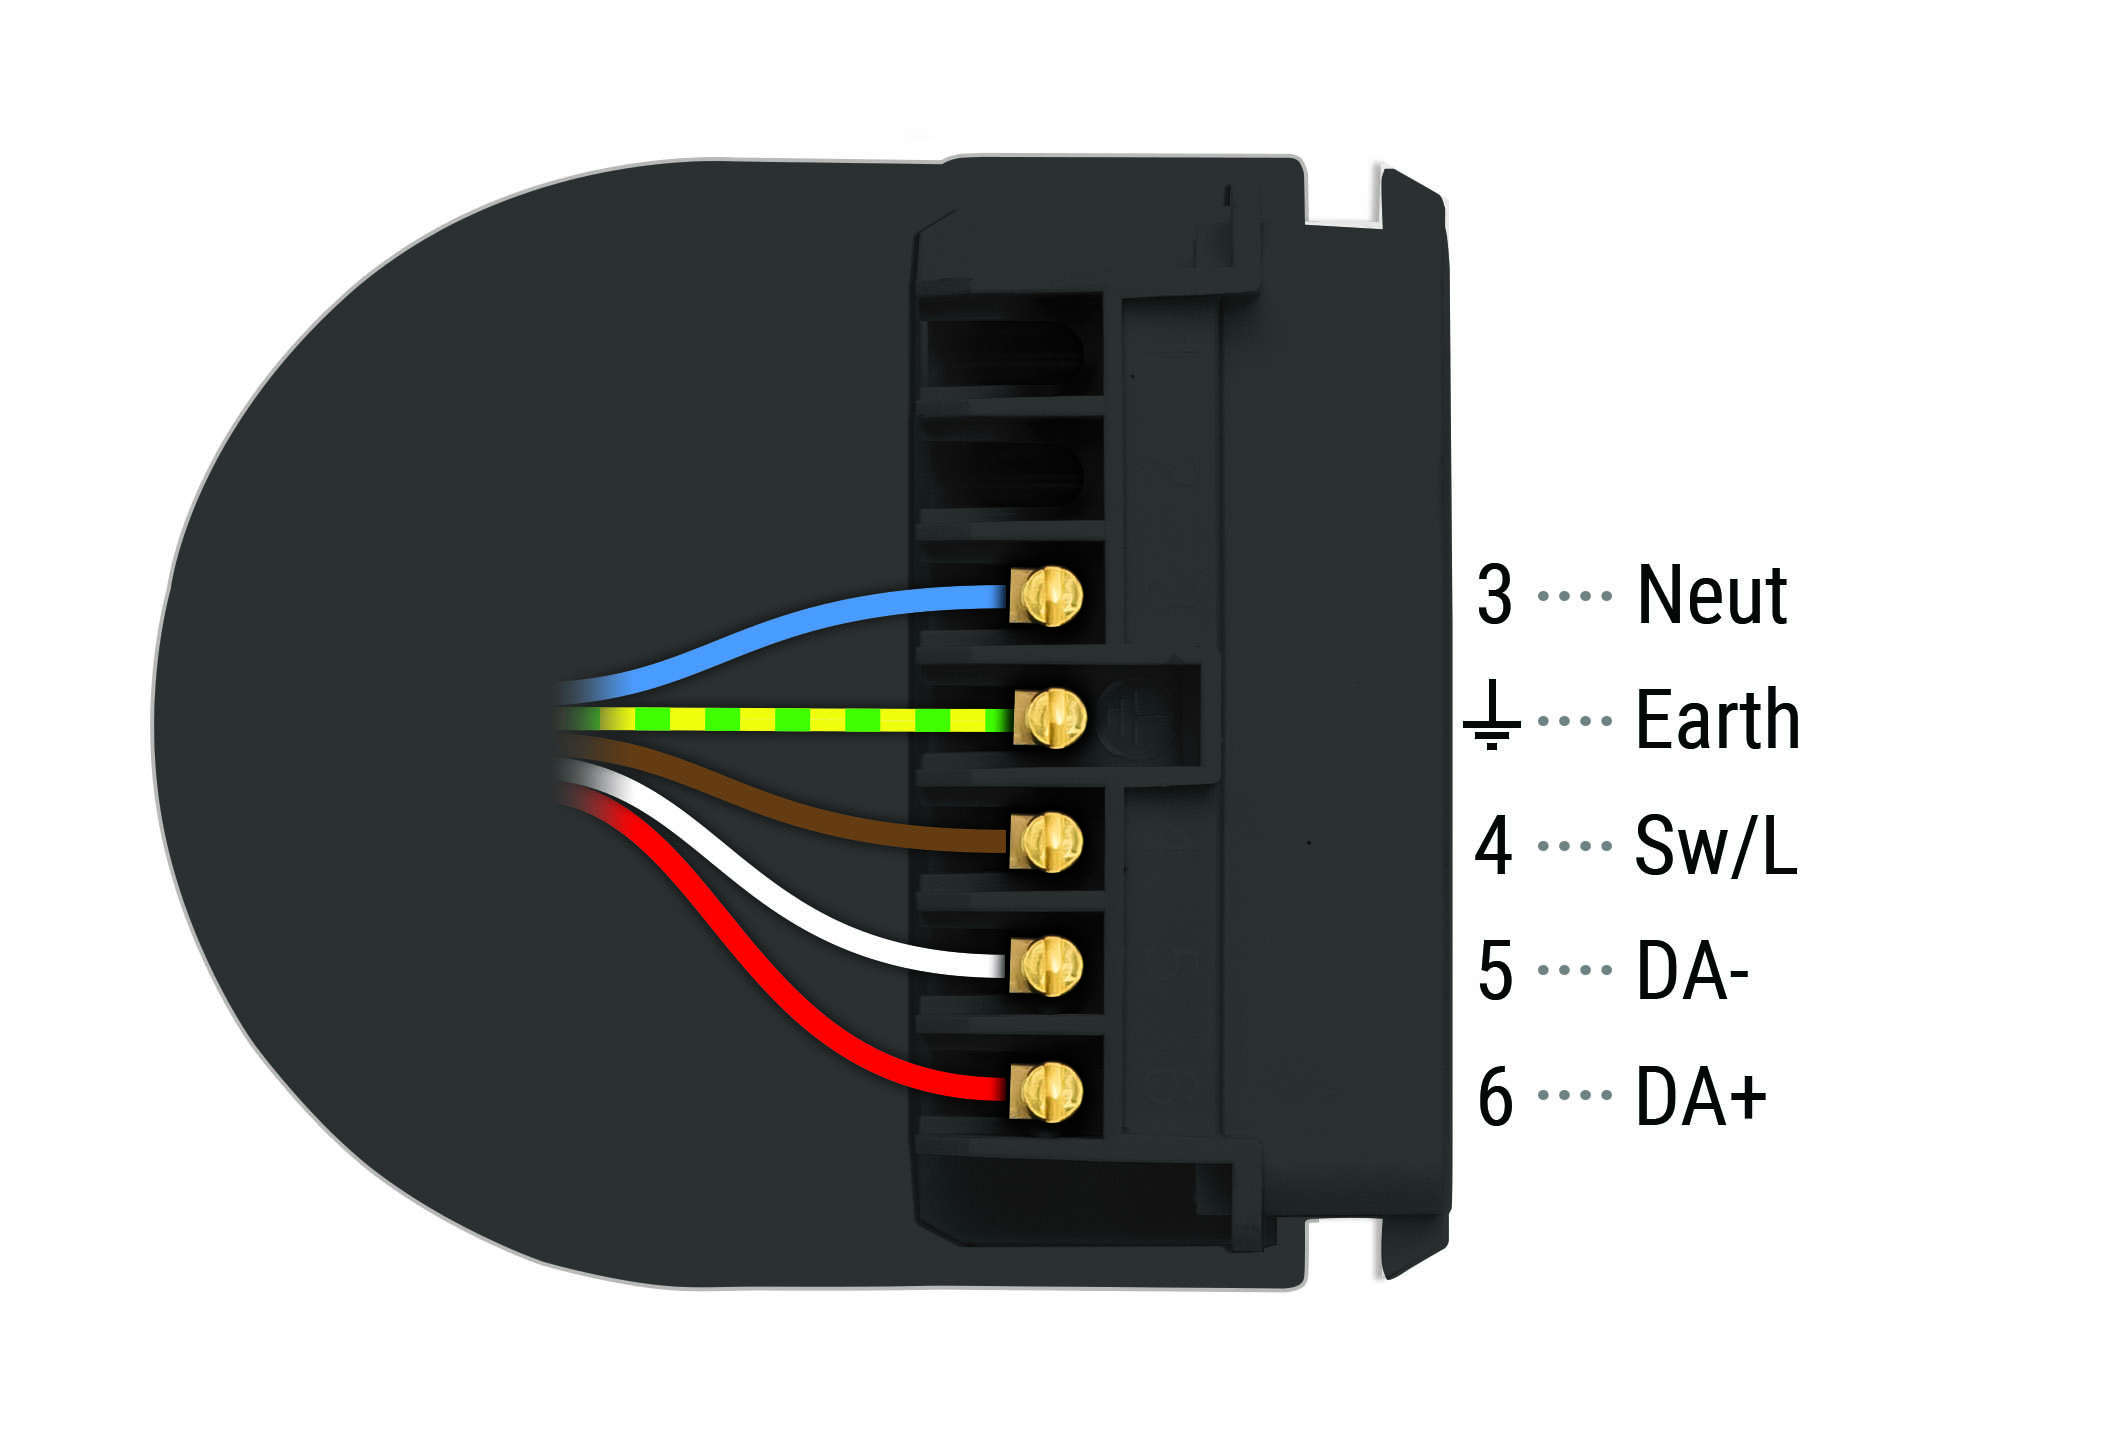 flex7 5-Pole Socket Wiring Diagram